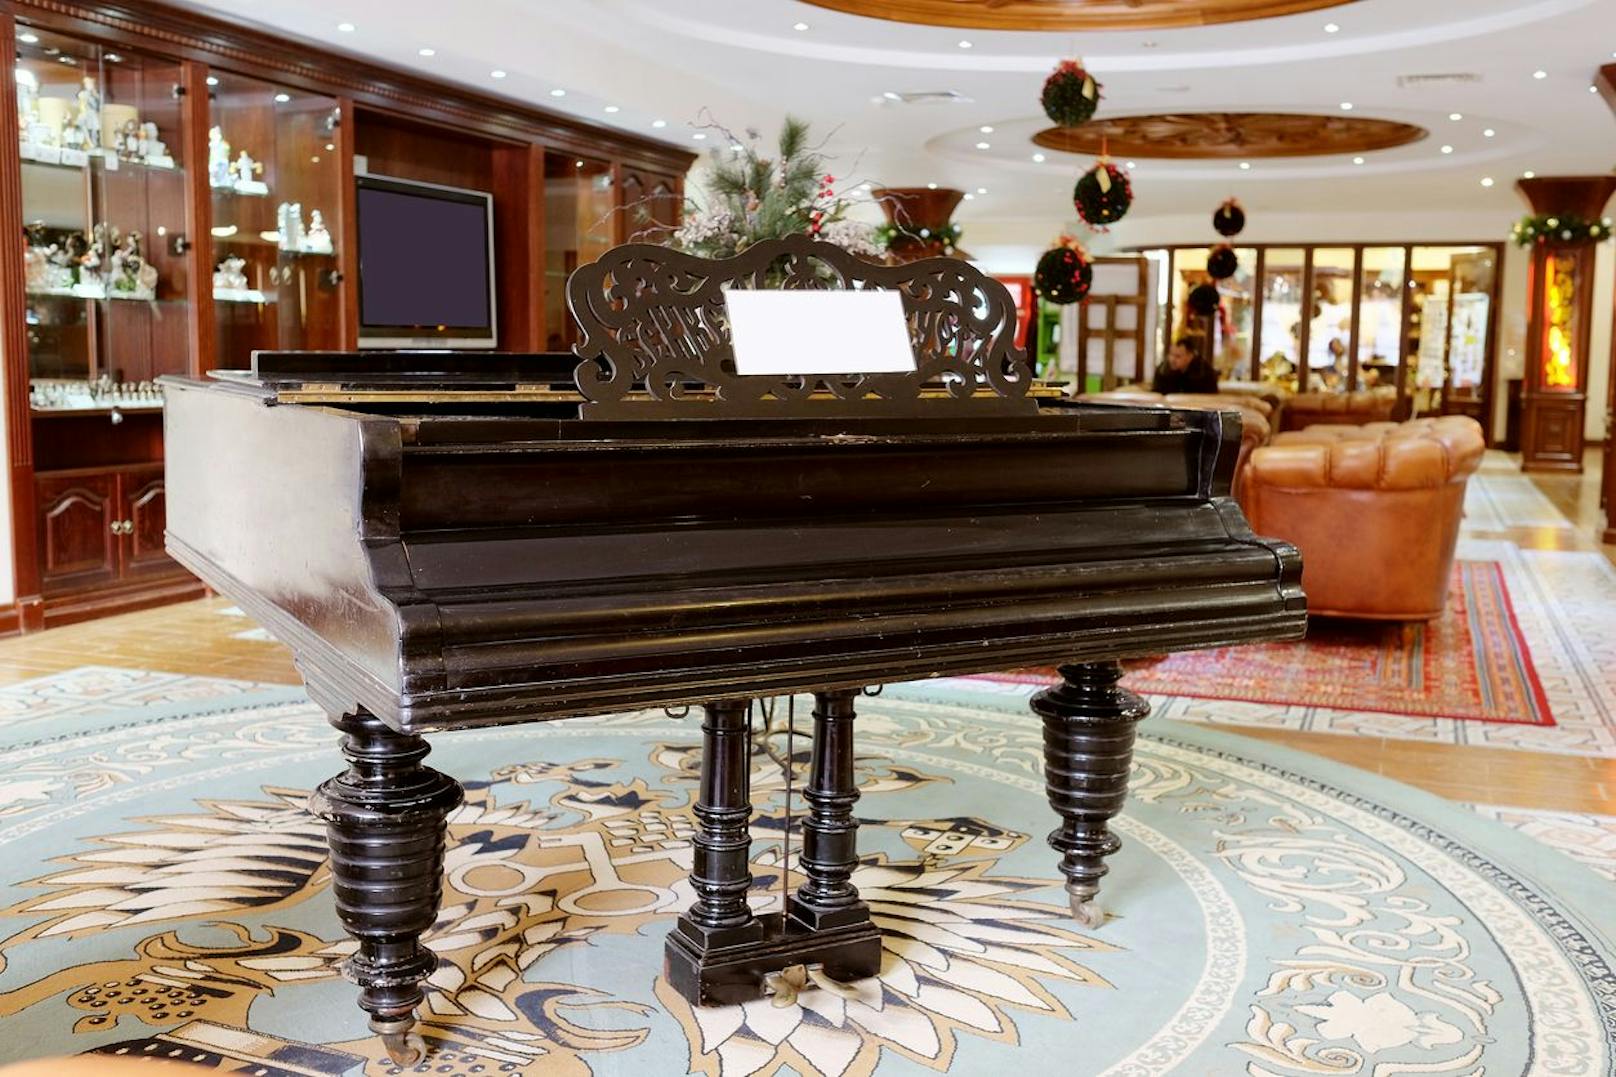 Ein Hotelier aus Italien berichtet vom Diebstahl des Klaviers in der Lobby: "Mir fiel auf, dass irgendetwas fehlte. Kurz darauf erfuhr ich, dass drei unbekannte Männer in Overalls das große Piano abtransportiert hatten. Es tauchte natürlich nie wieder auf."